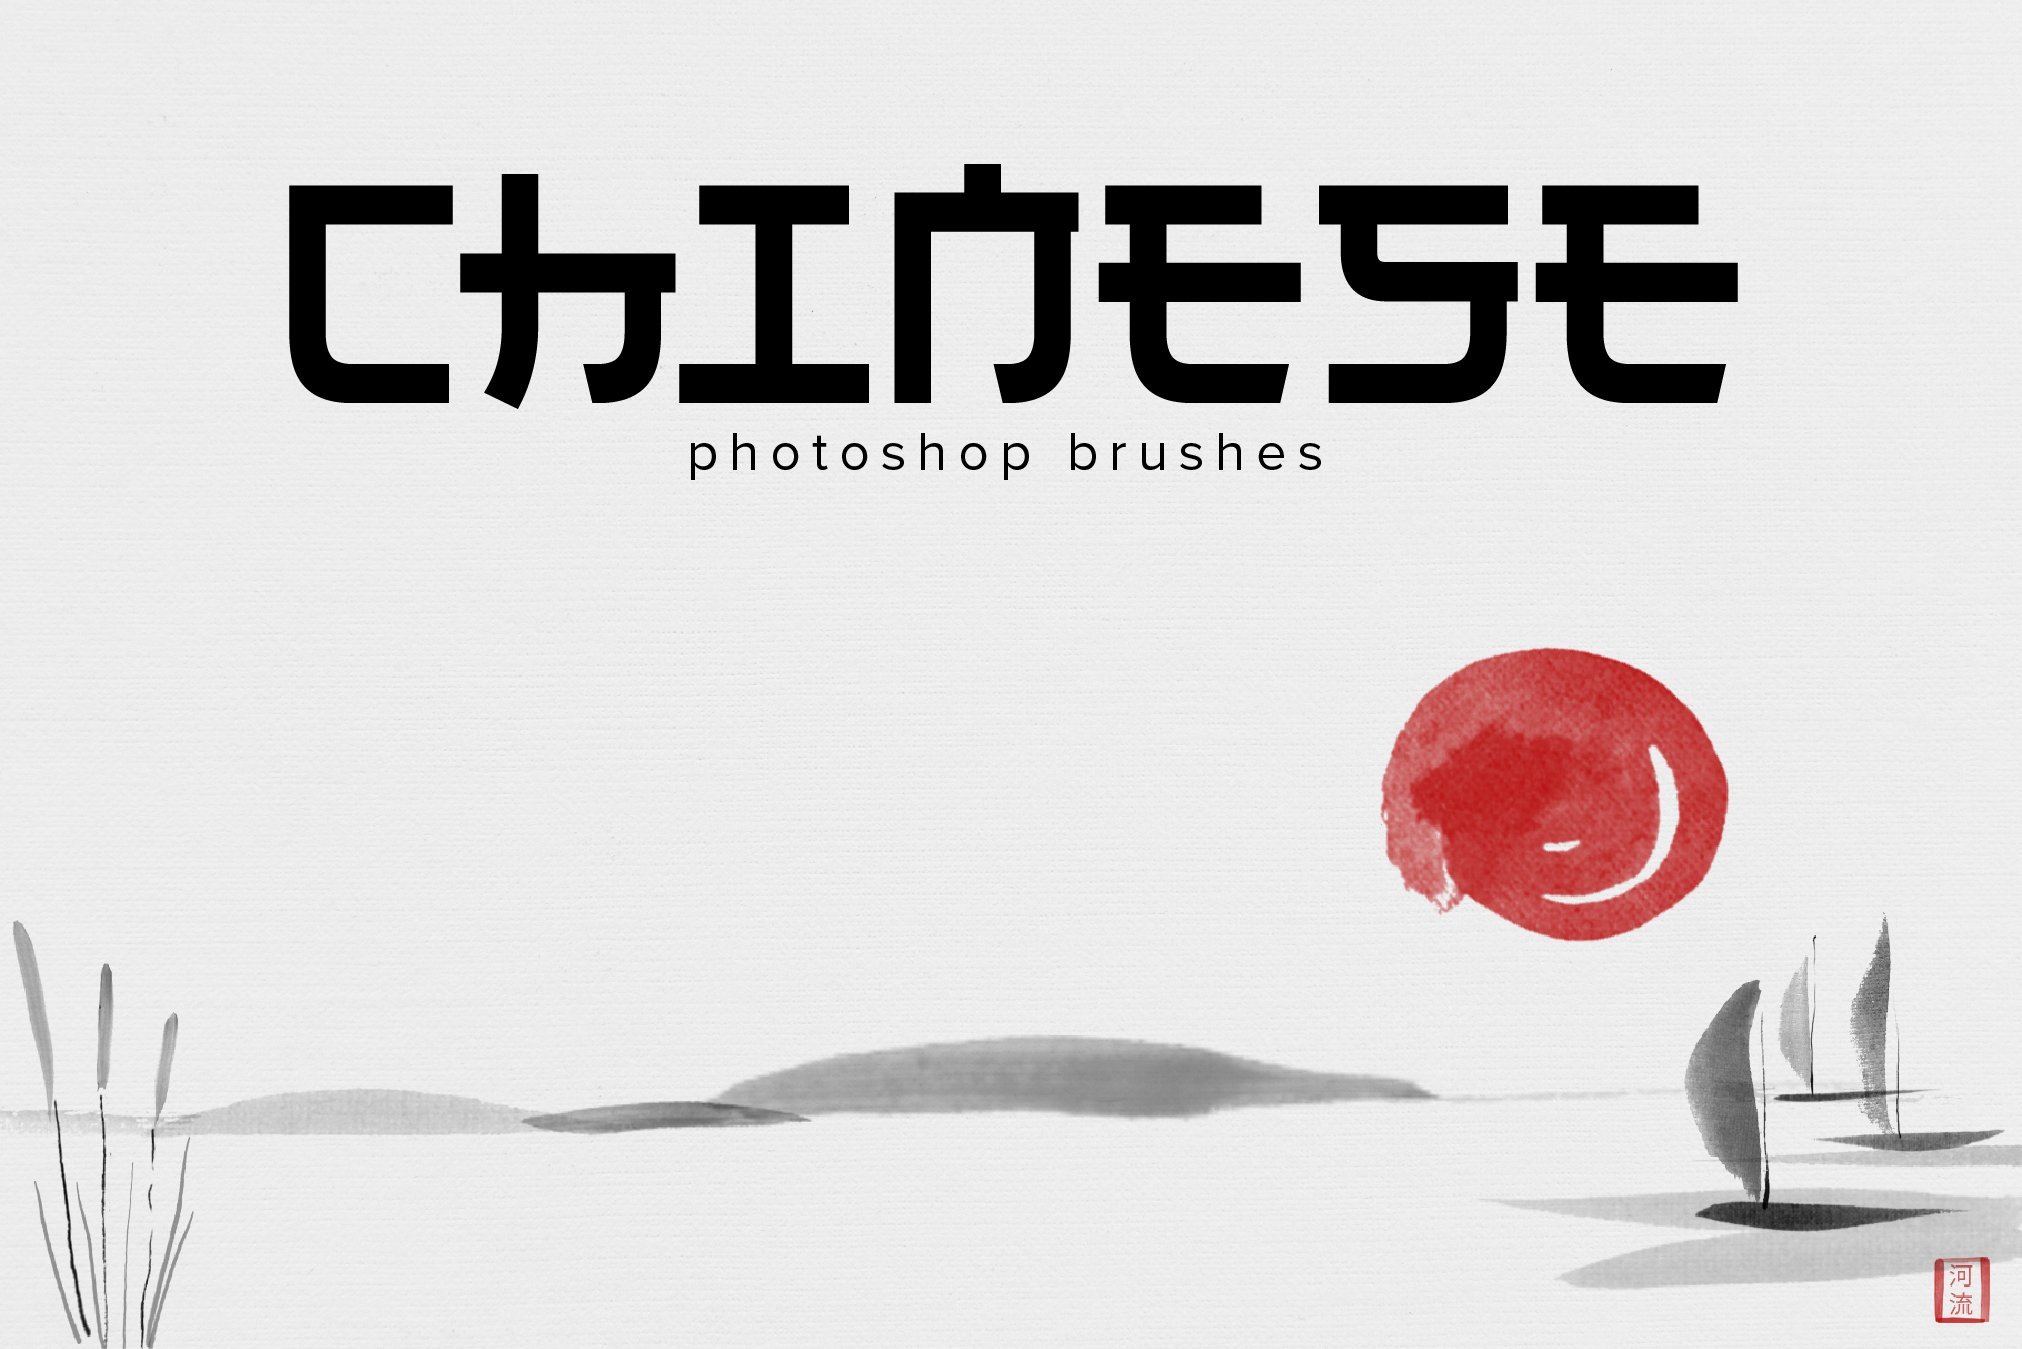 Chinese Photoshop brushescover image.